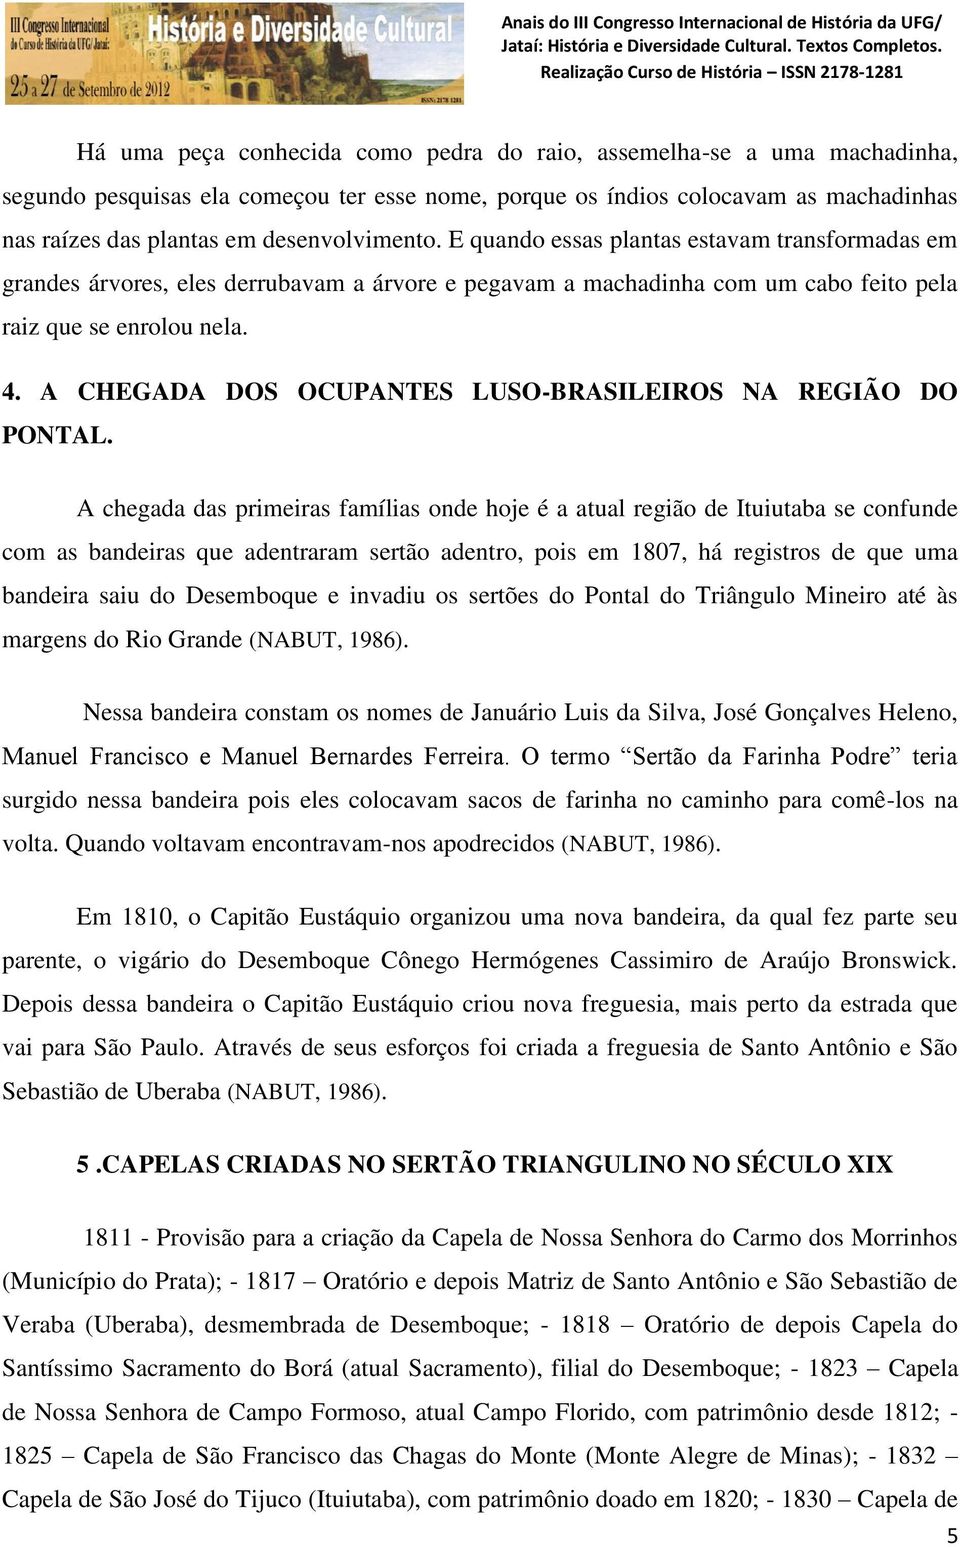 A CHEGADA DOS OCUPANTES LUSO-BRASILEIROS NA REGIÃO DO PONTAL.